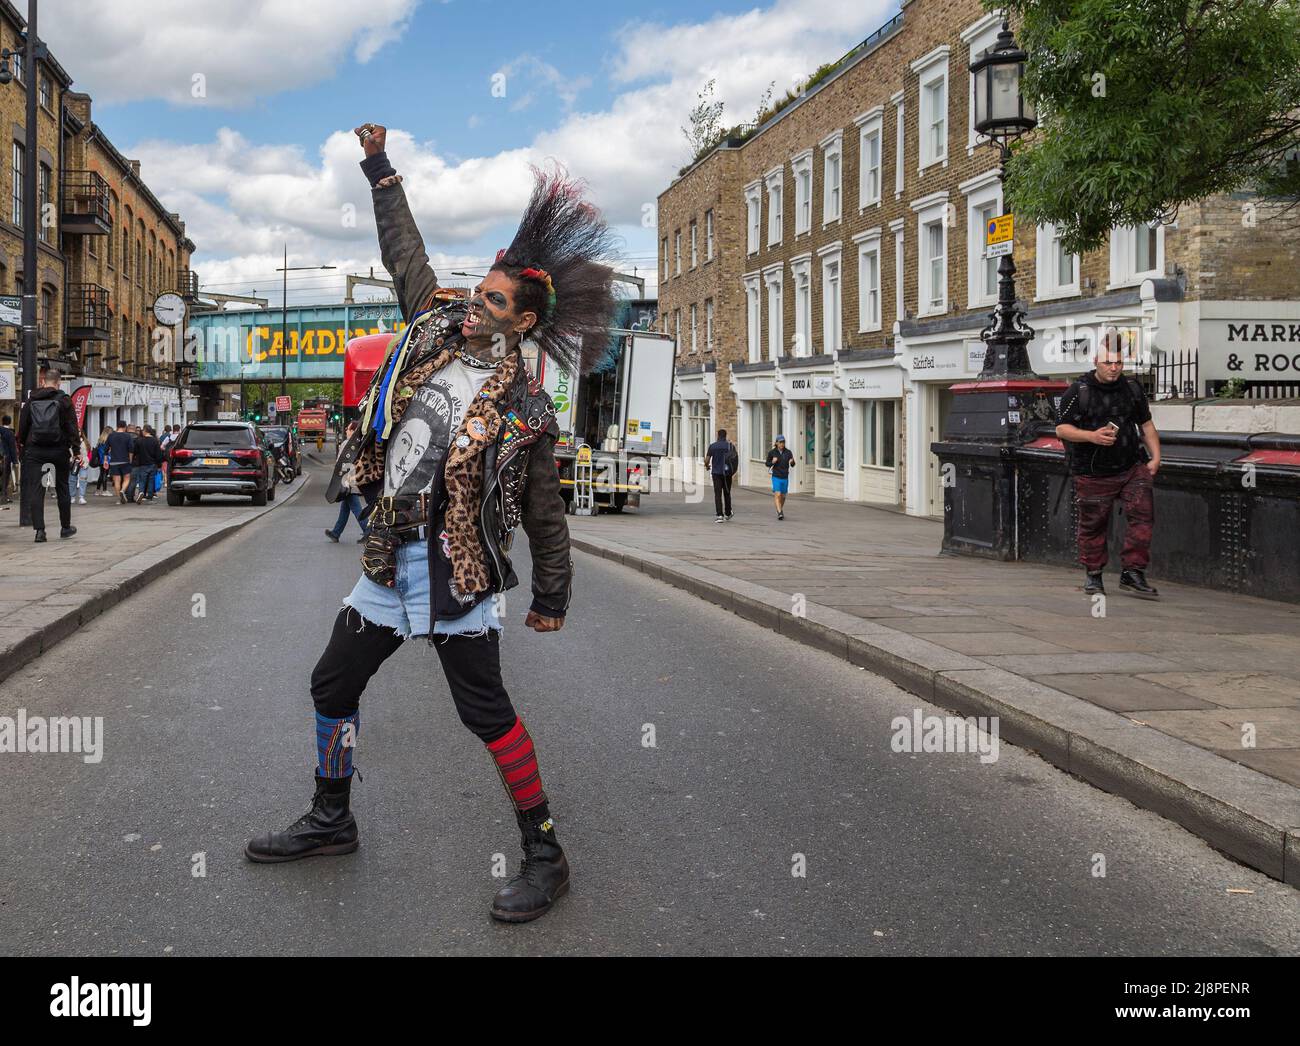 Ein Punk-Rocker mit einer fantastischen Mohawk-Frisur, der mitten auf der Straße steht, eine geballte Faust hebt und durch gerissene Zähne knurrst Stockfoto